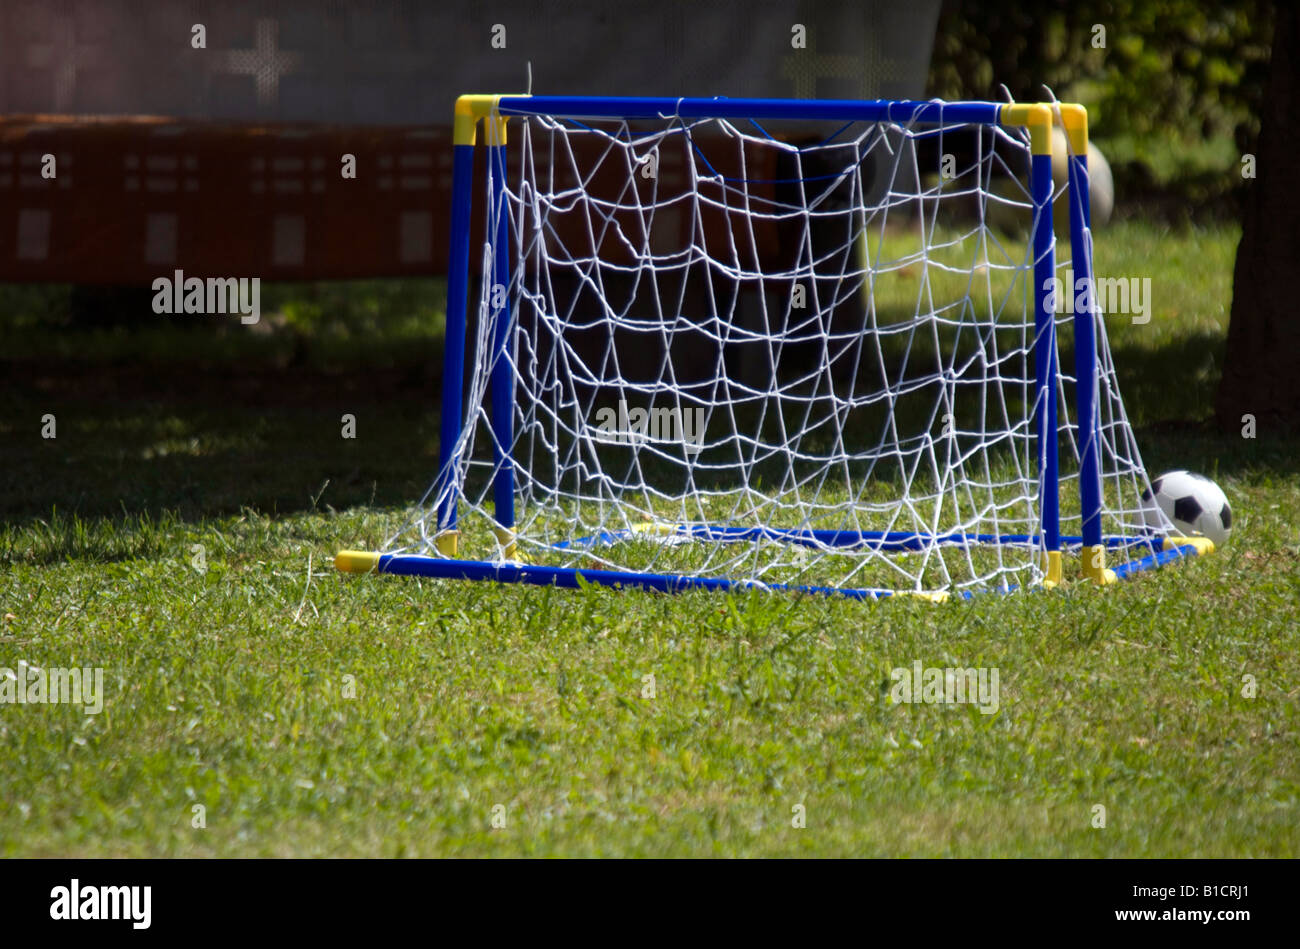 Petit, buts de football en plastique sur une herbe. Banque D'Images